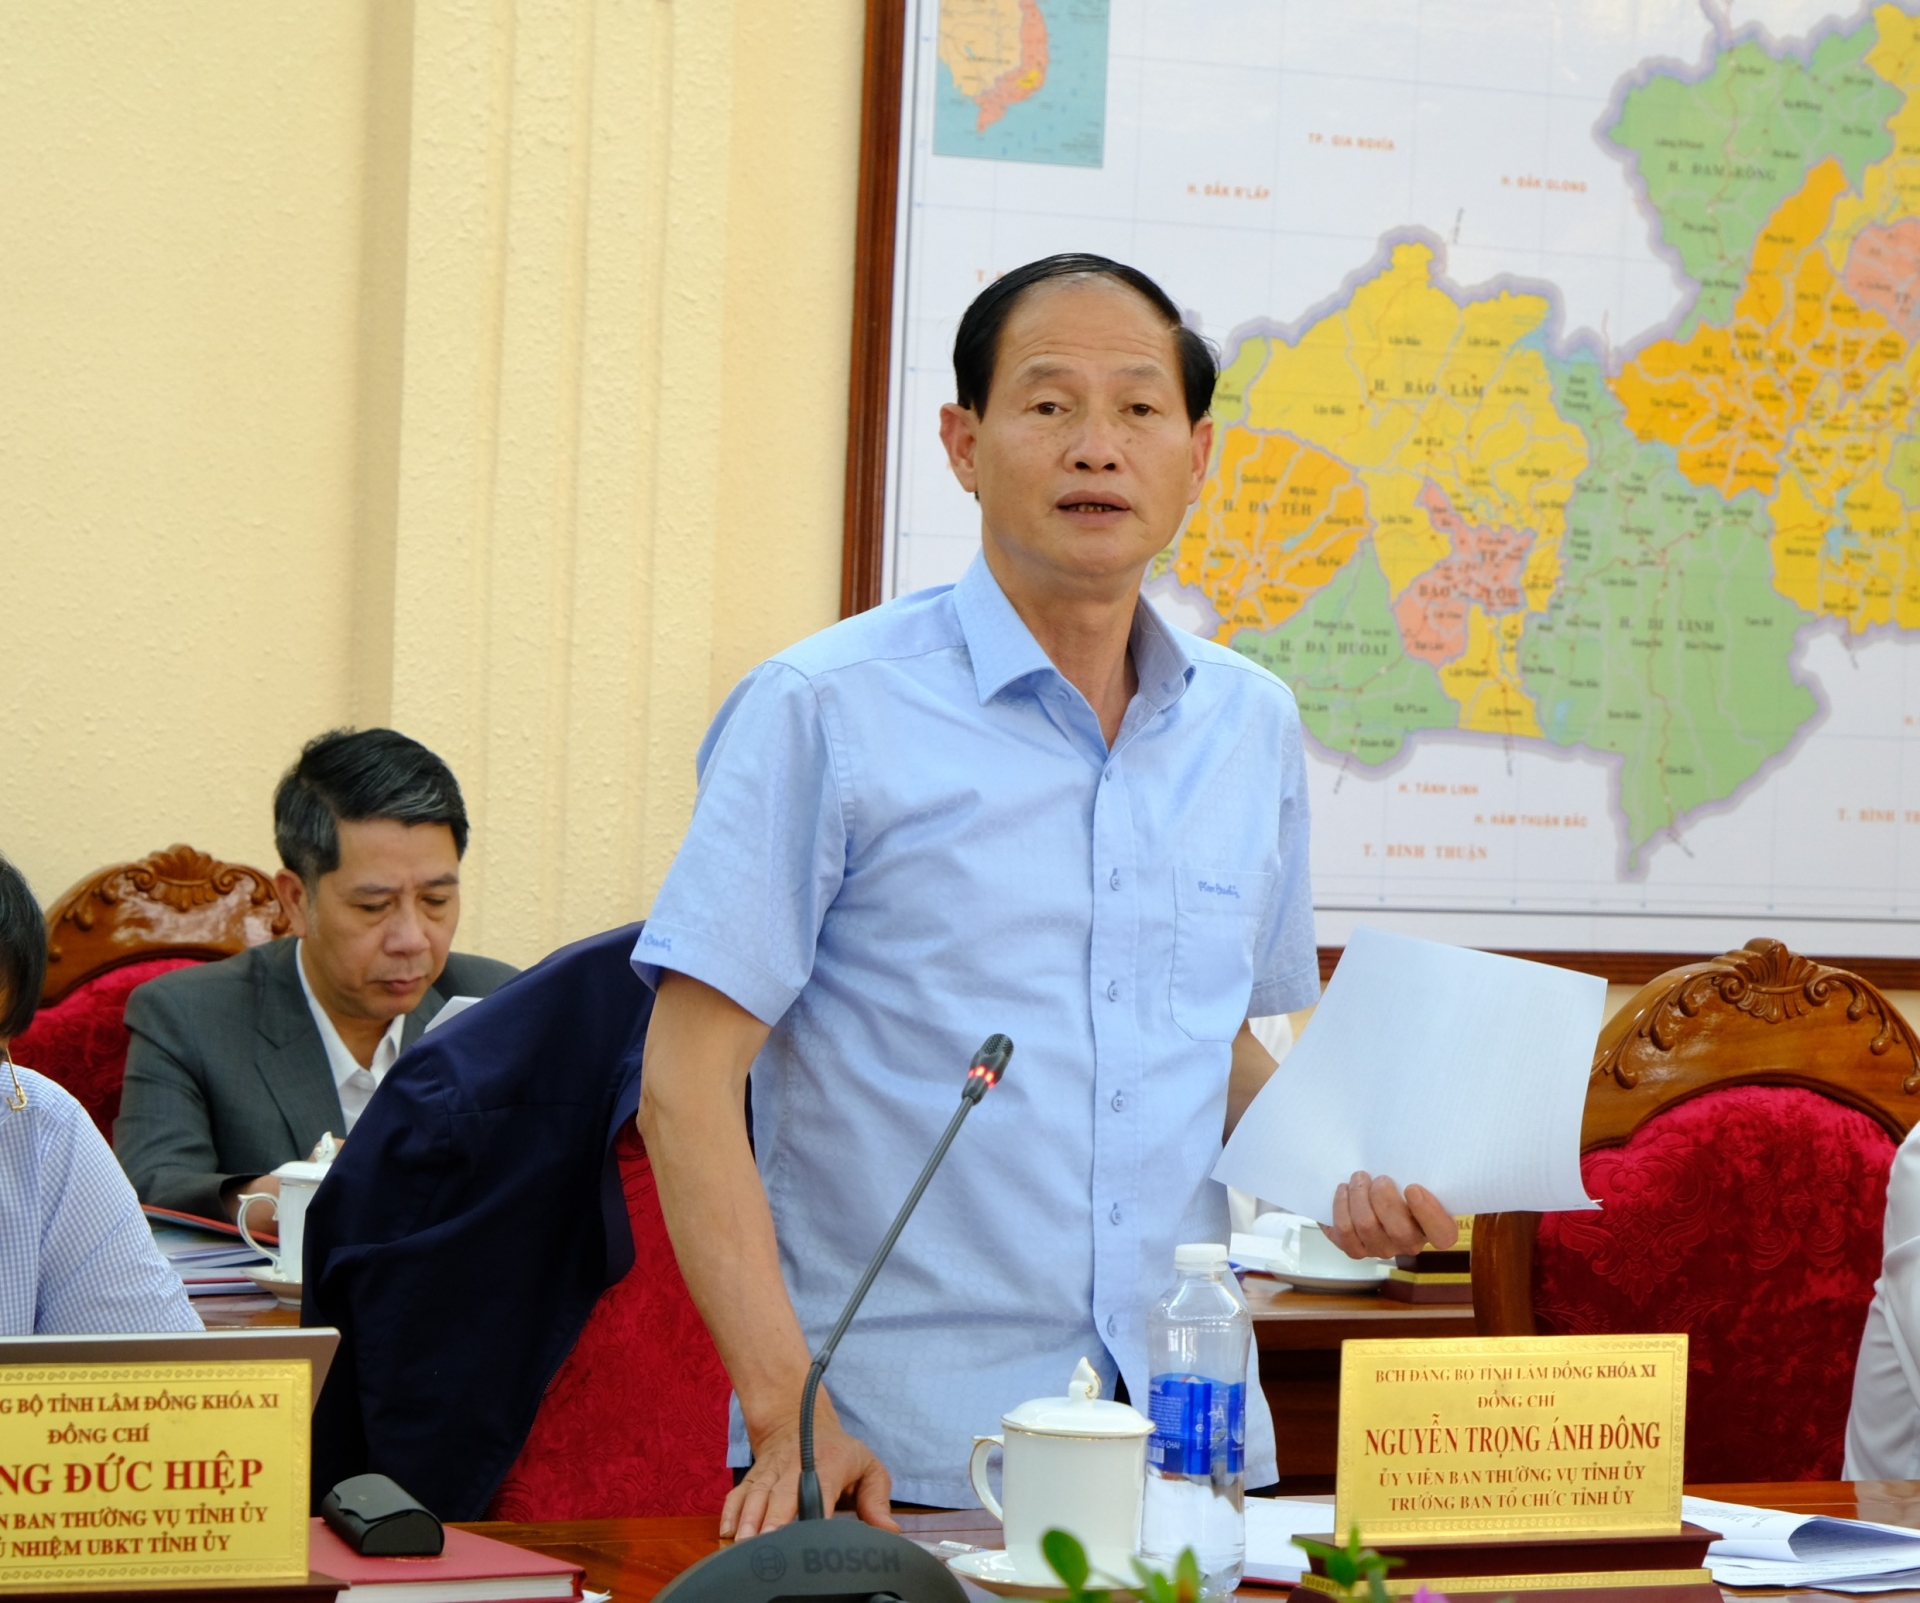 Đồng chí Nguyễn Trọng Ánh Đông - Ủy viên BTV, Trưởng Ban Tổ chức Tỉnh ủy đóng góp ý kiến vào dự thảo Chỉ thị